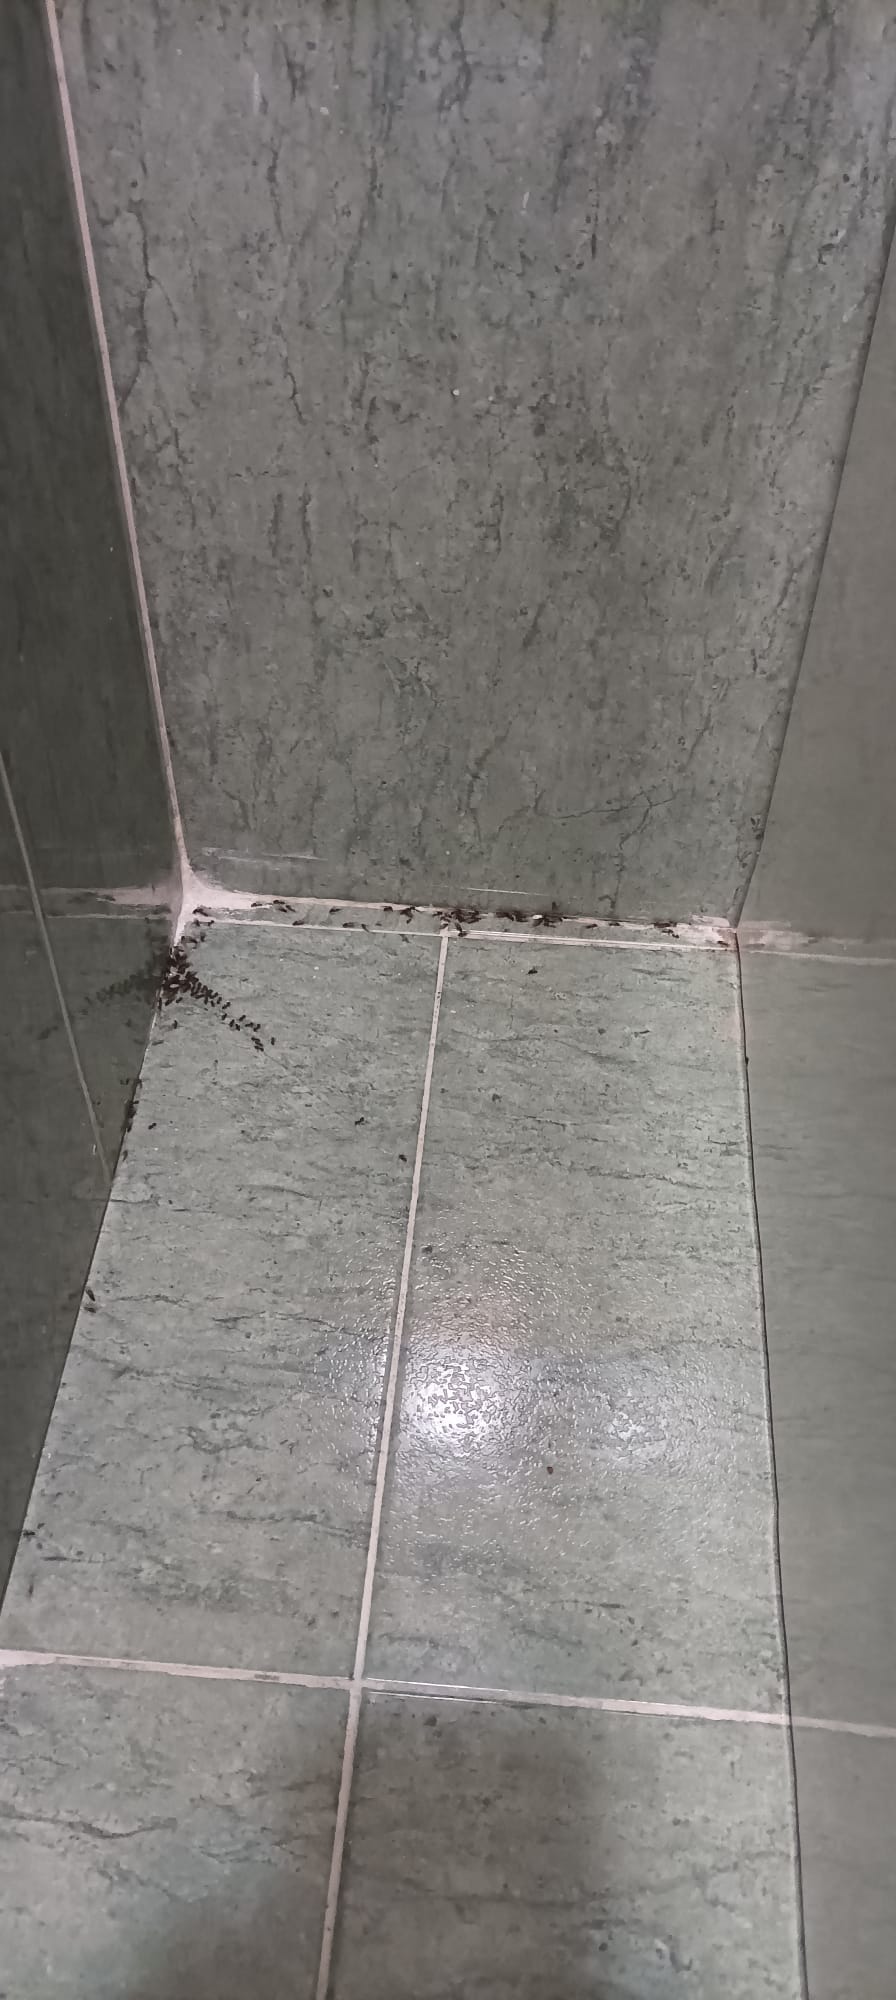 Plagas hormigas más complicadas de lo que aparentemente parece